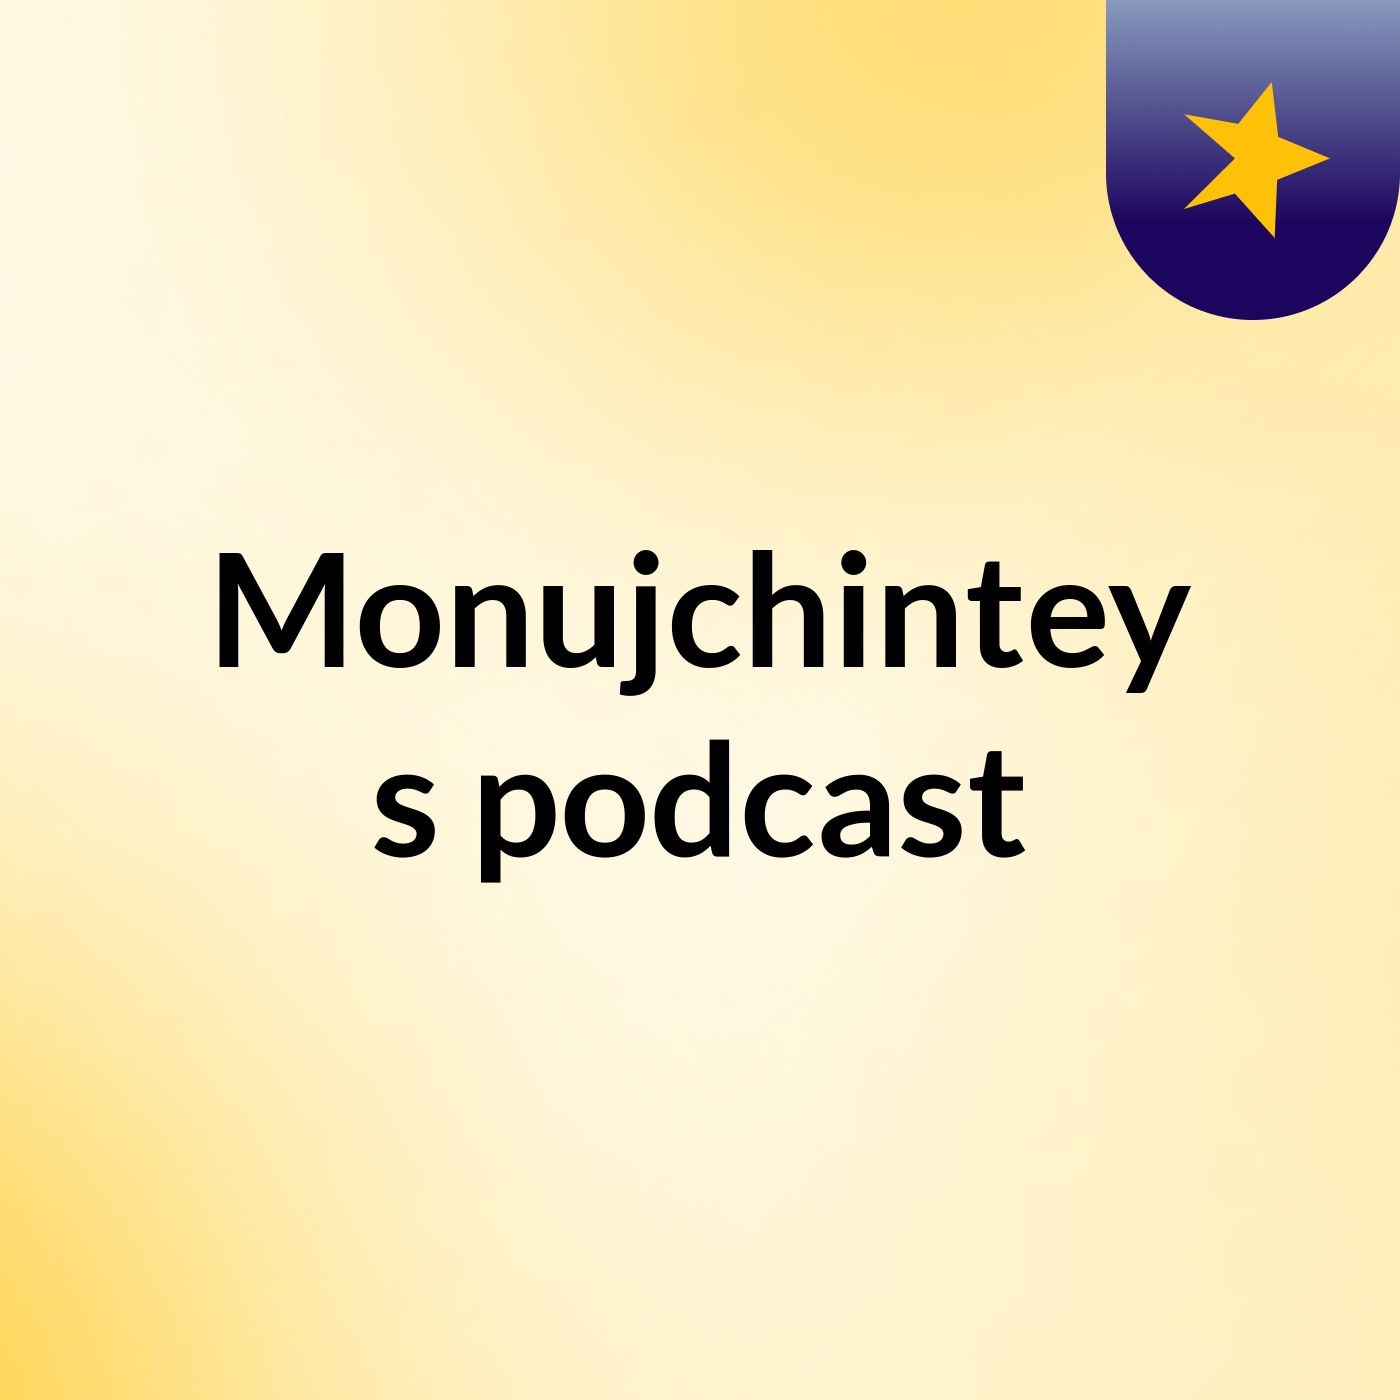 Episode 2 - Monujchintey's podcast